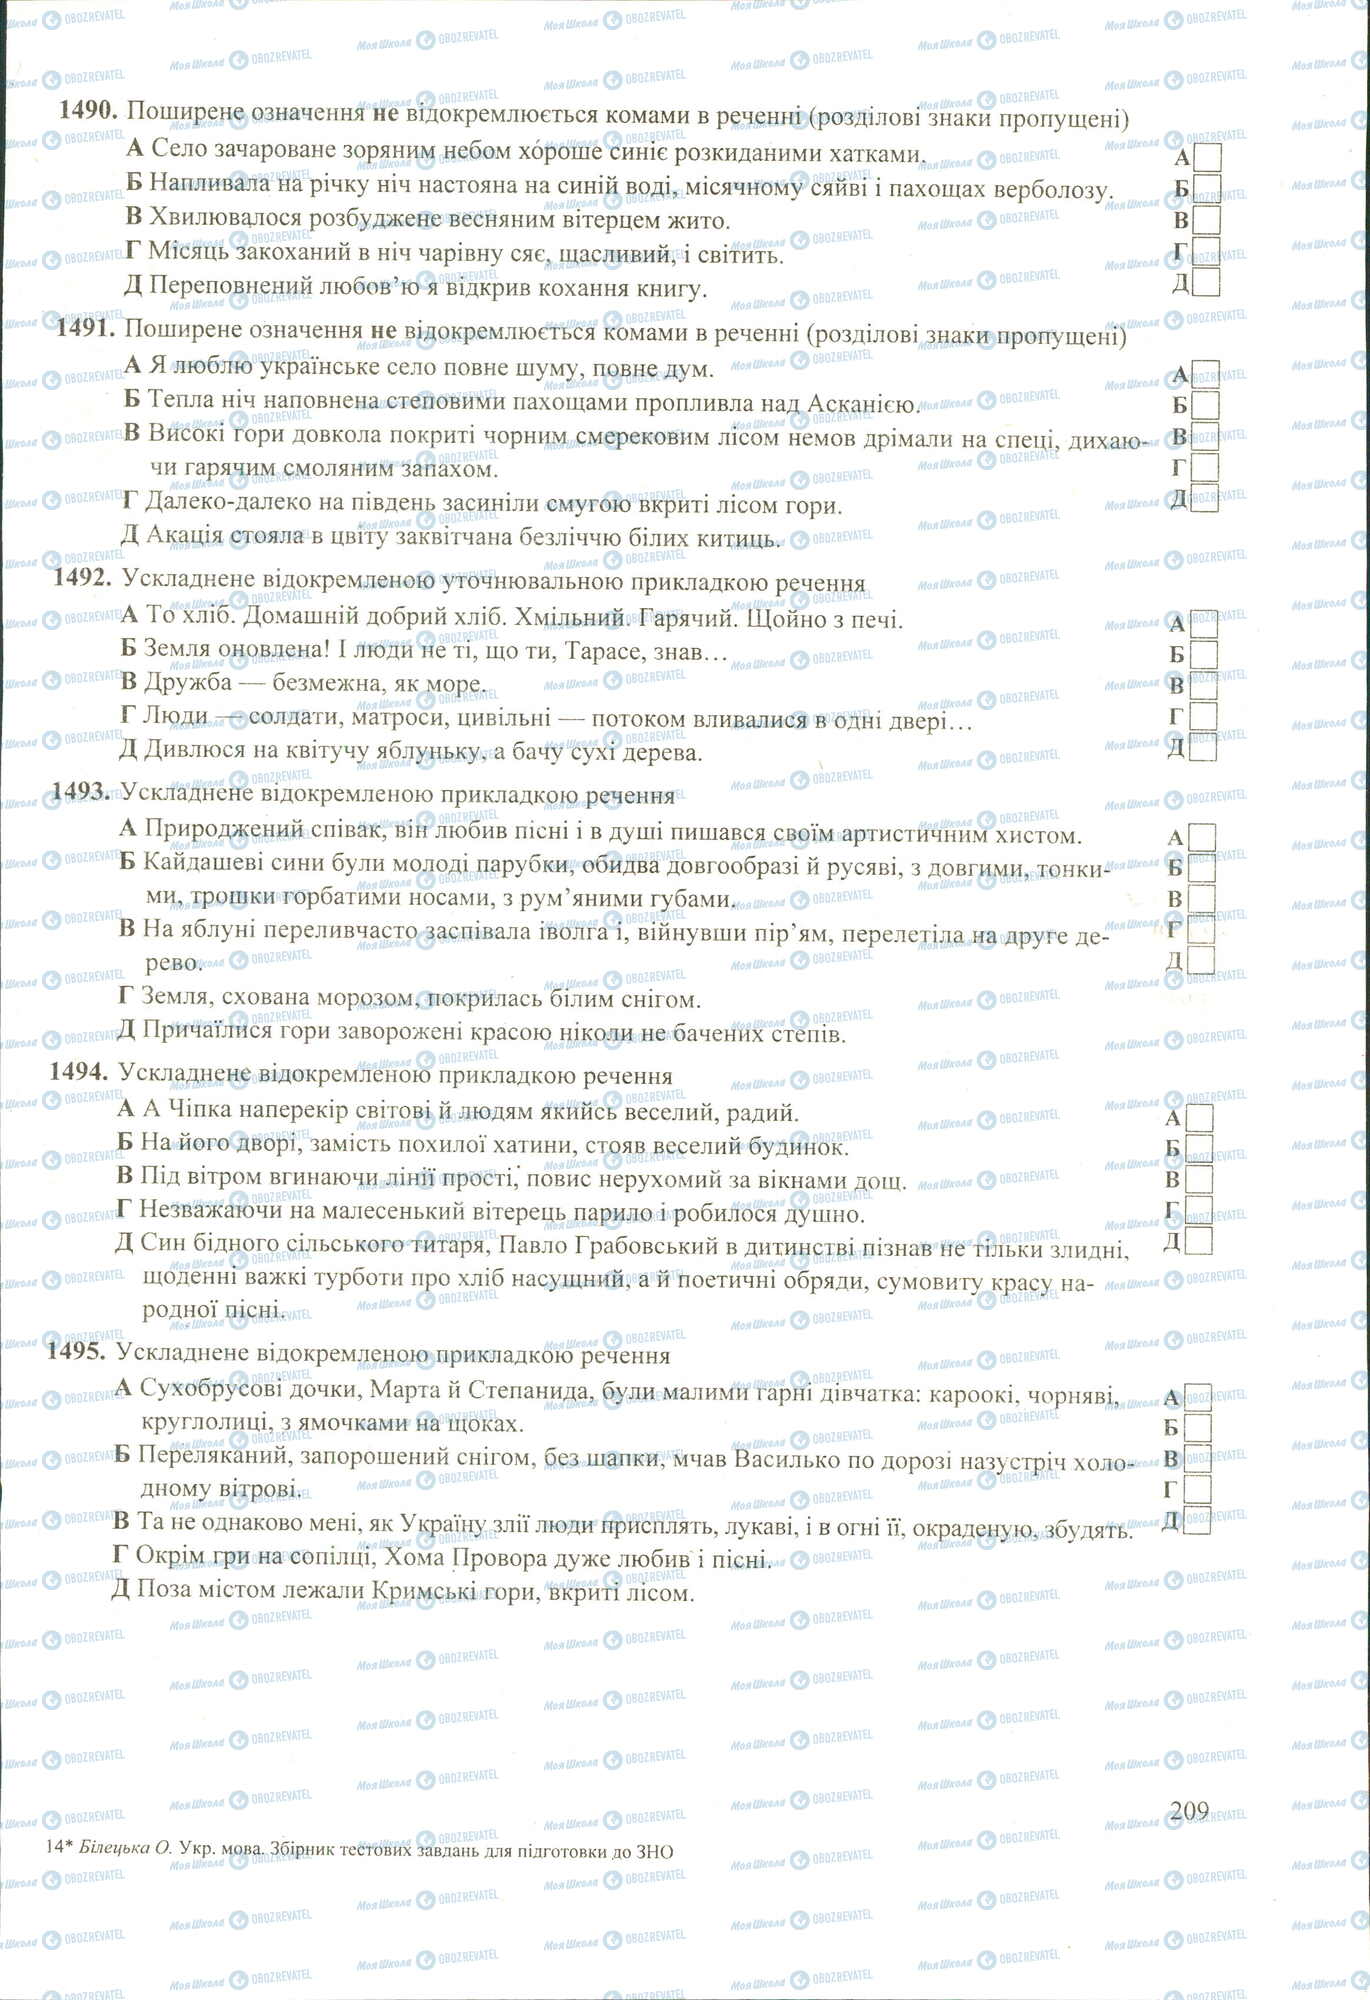 ЗНО Укр мова 11 класс страница 1490-1495